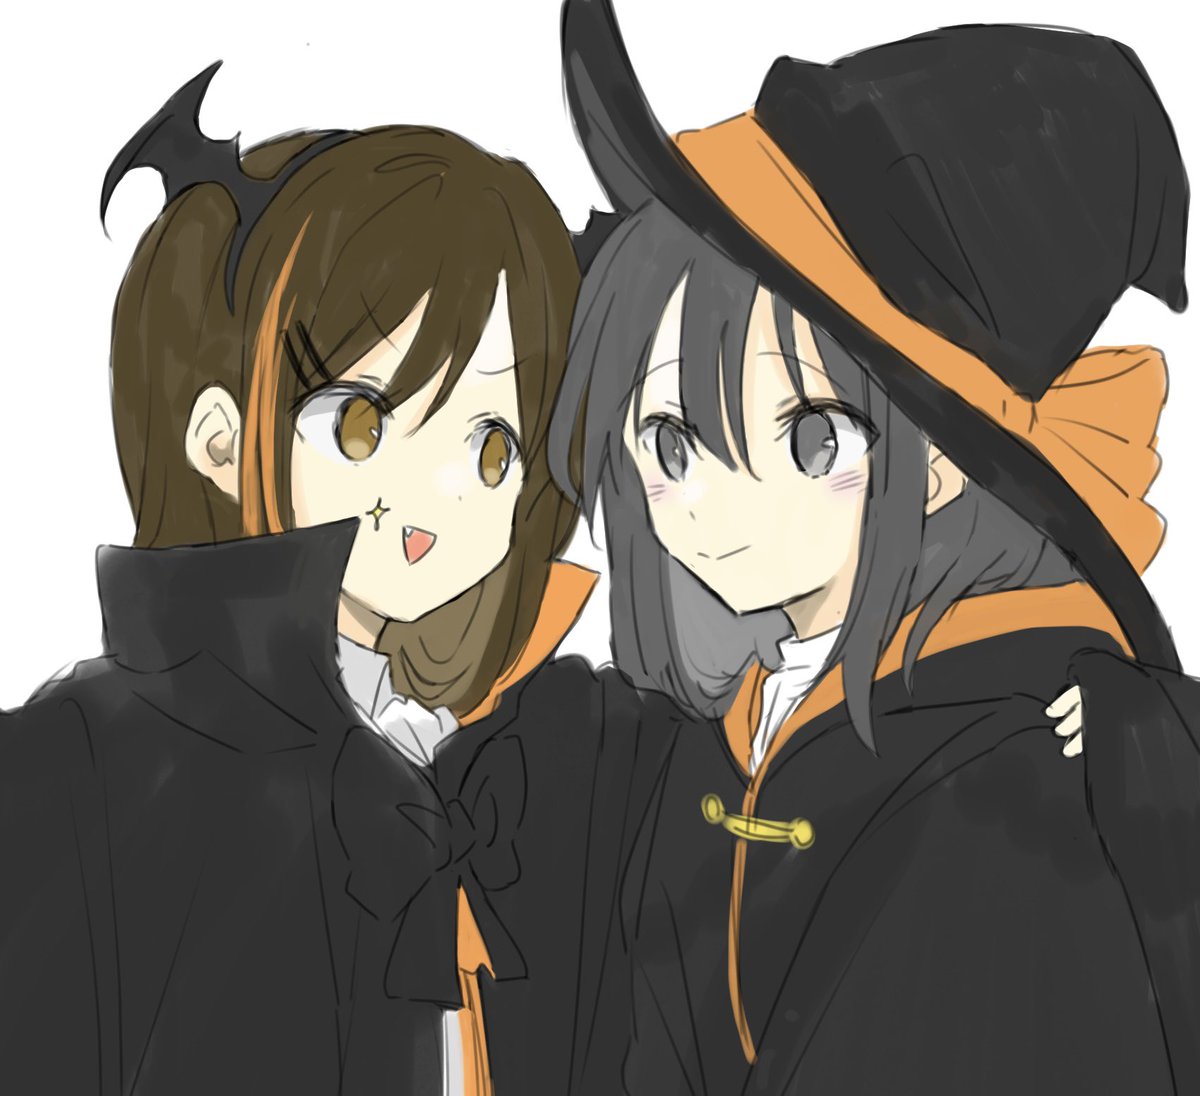 multiple girls 2girls hat witch hat brown hair smile black cloak  illustration images